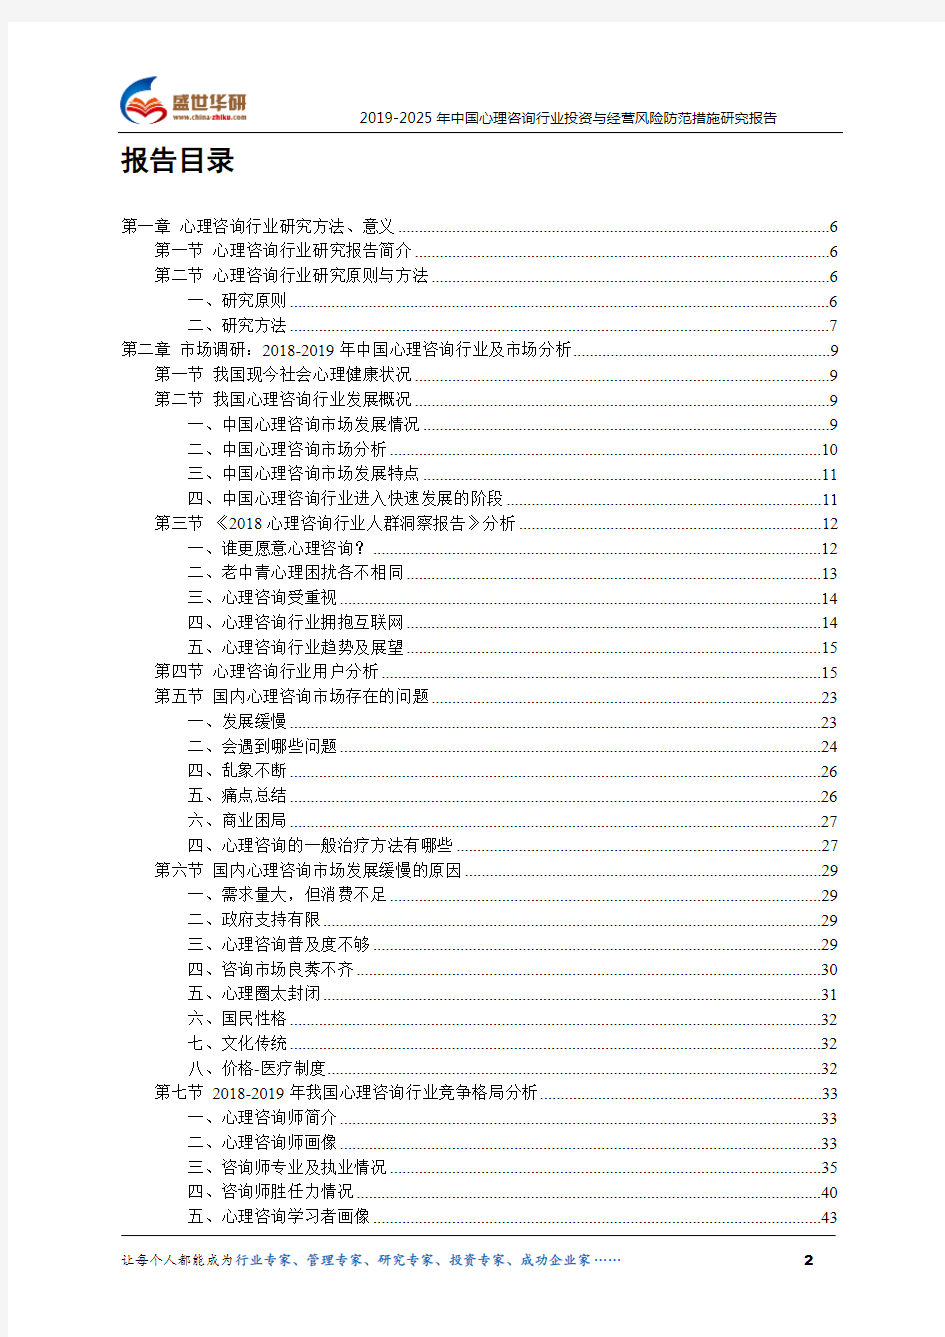 【完整版】2019-2025年中国心理咨询行业投资与经营风险防范措施研究报告